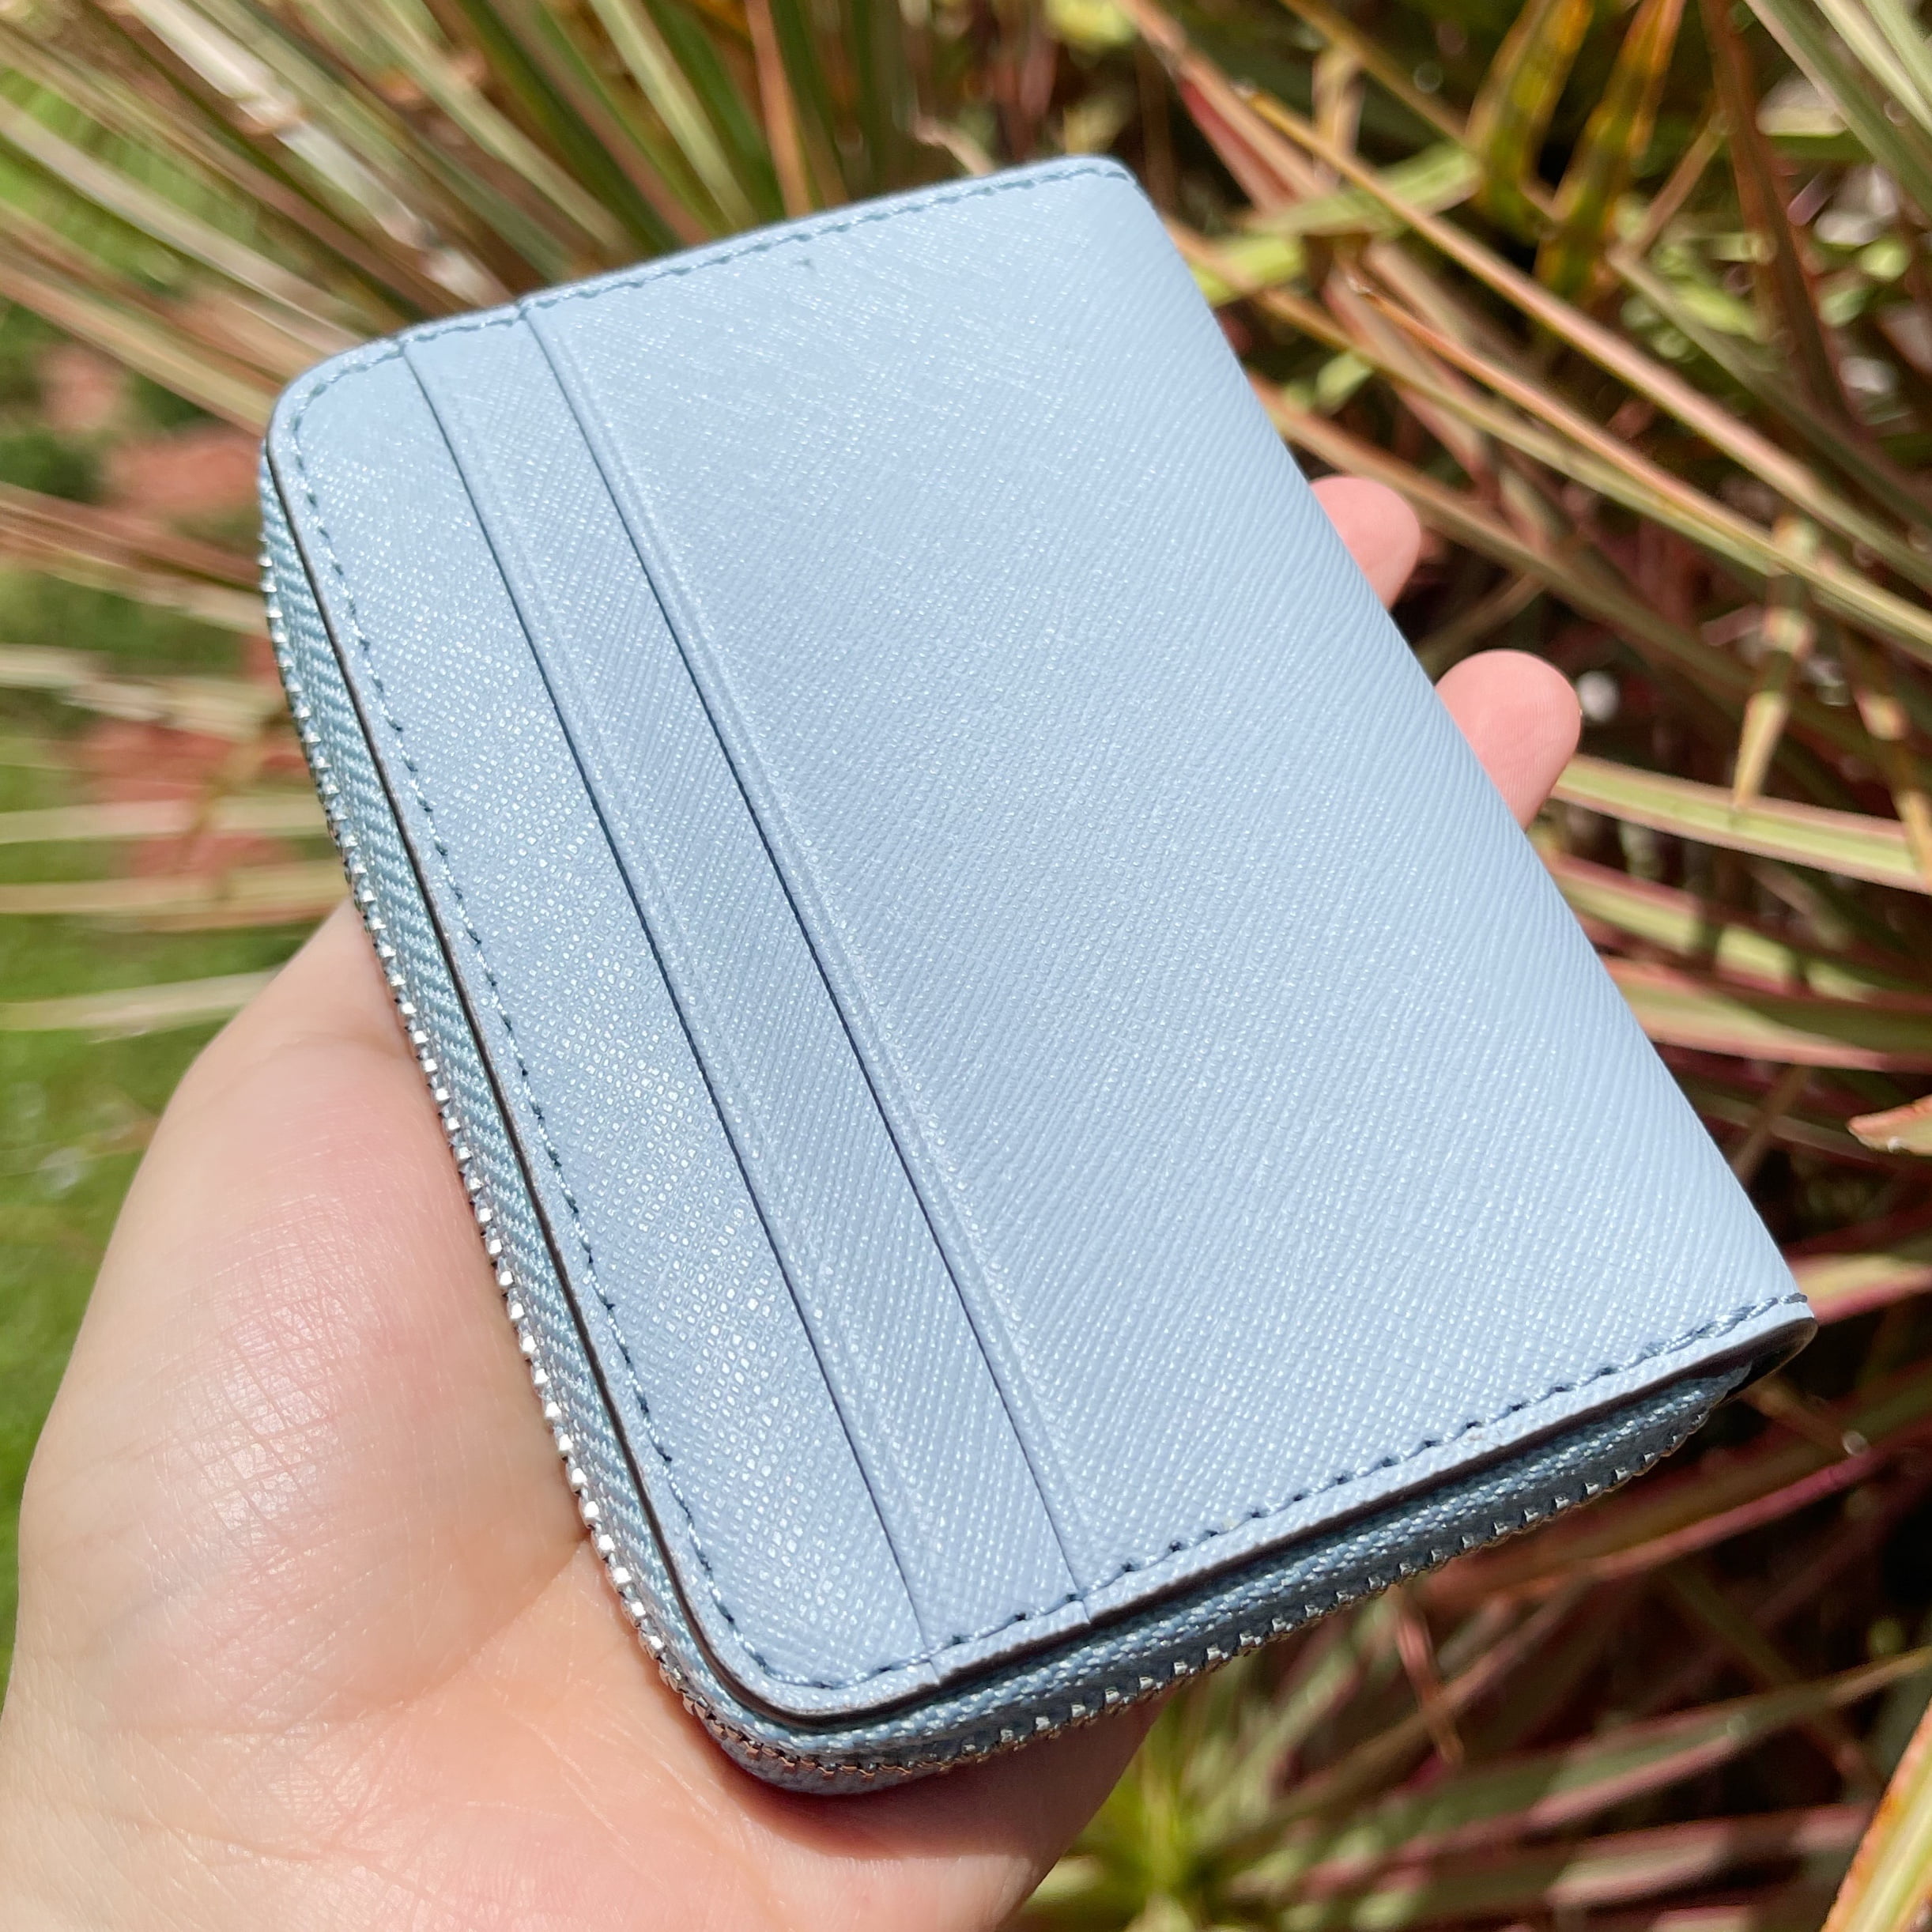 New MK 💞 Jet set travel wallet plus card holder